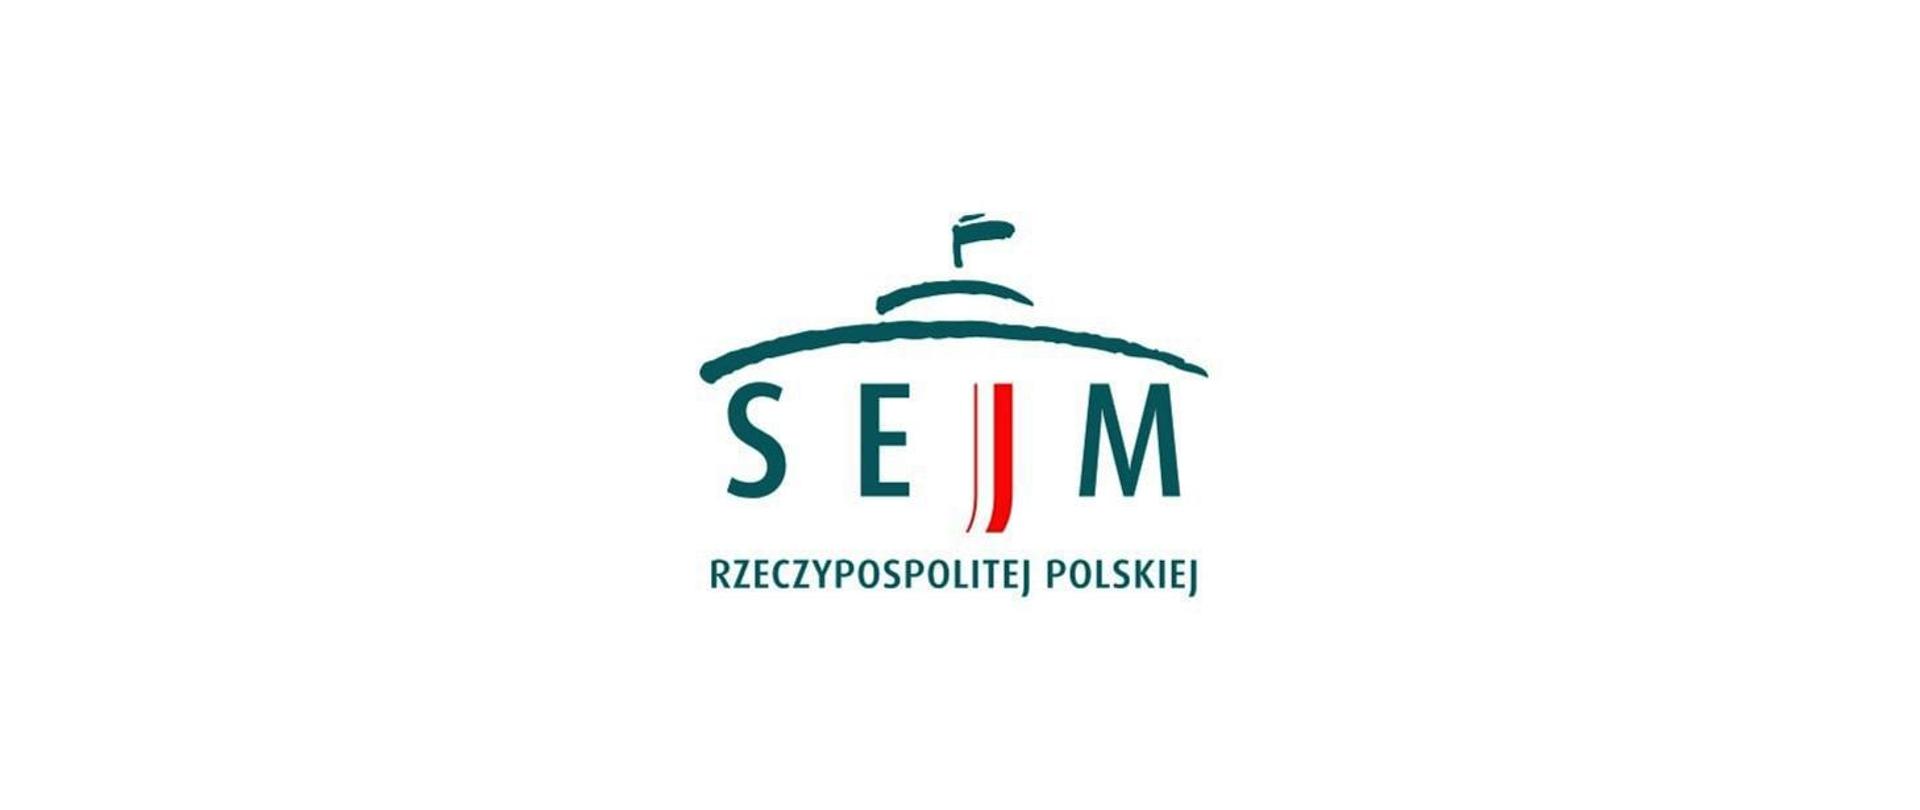 zdjęcie przedstawia logo "Sejm"